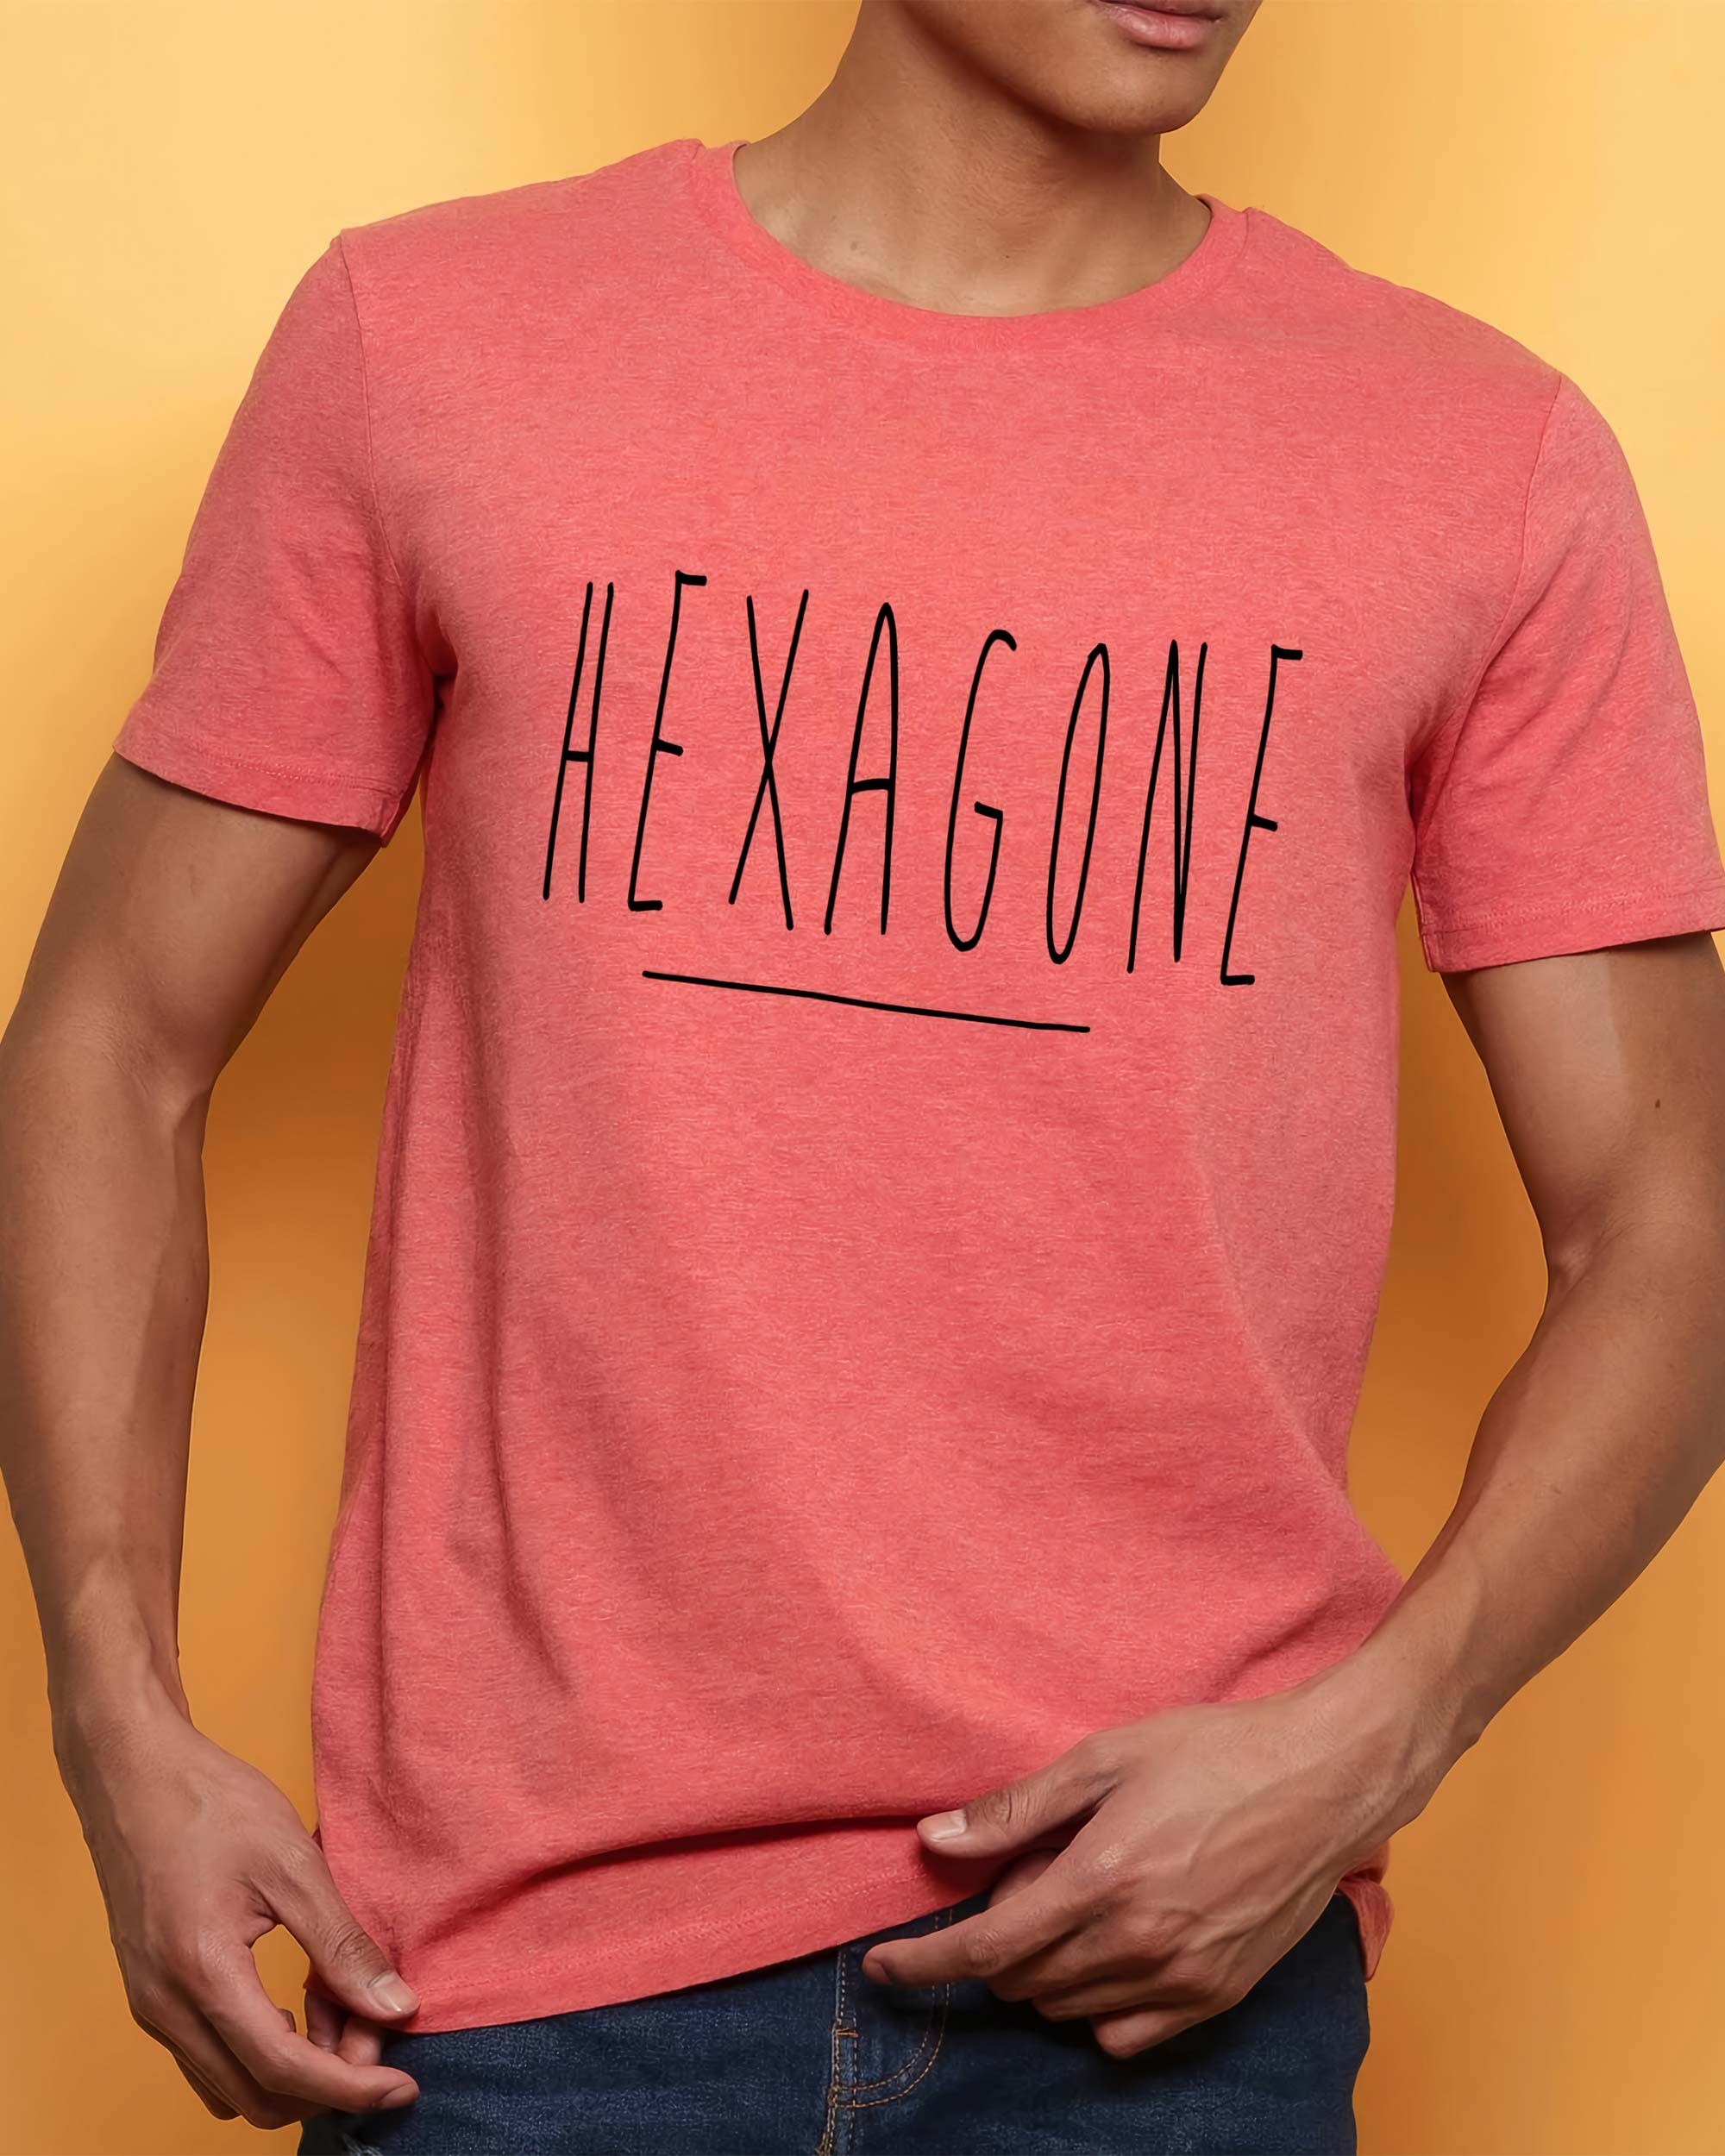 T-shirt Hexagone de couleur Rouge chiné par Hexagone